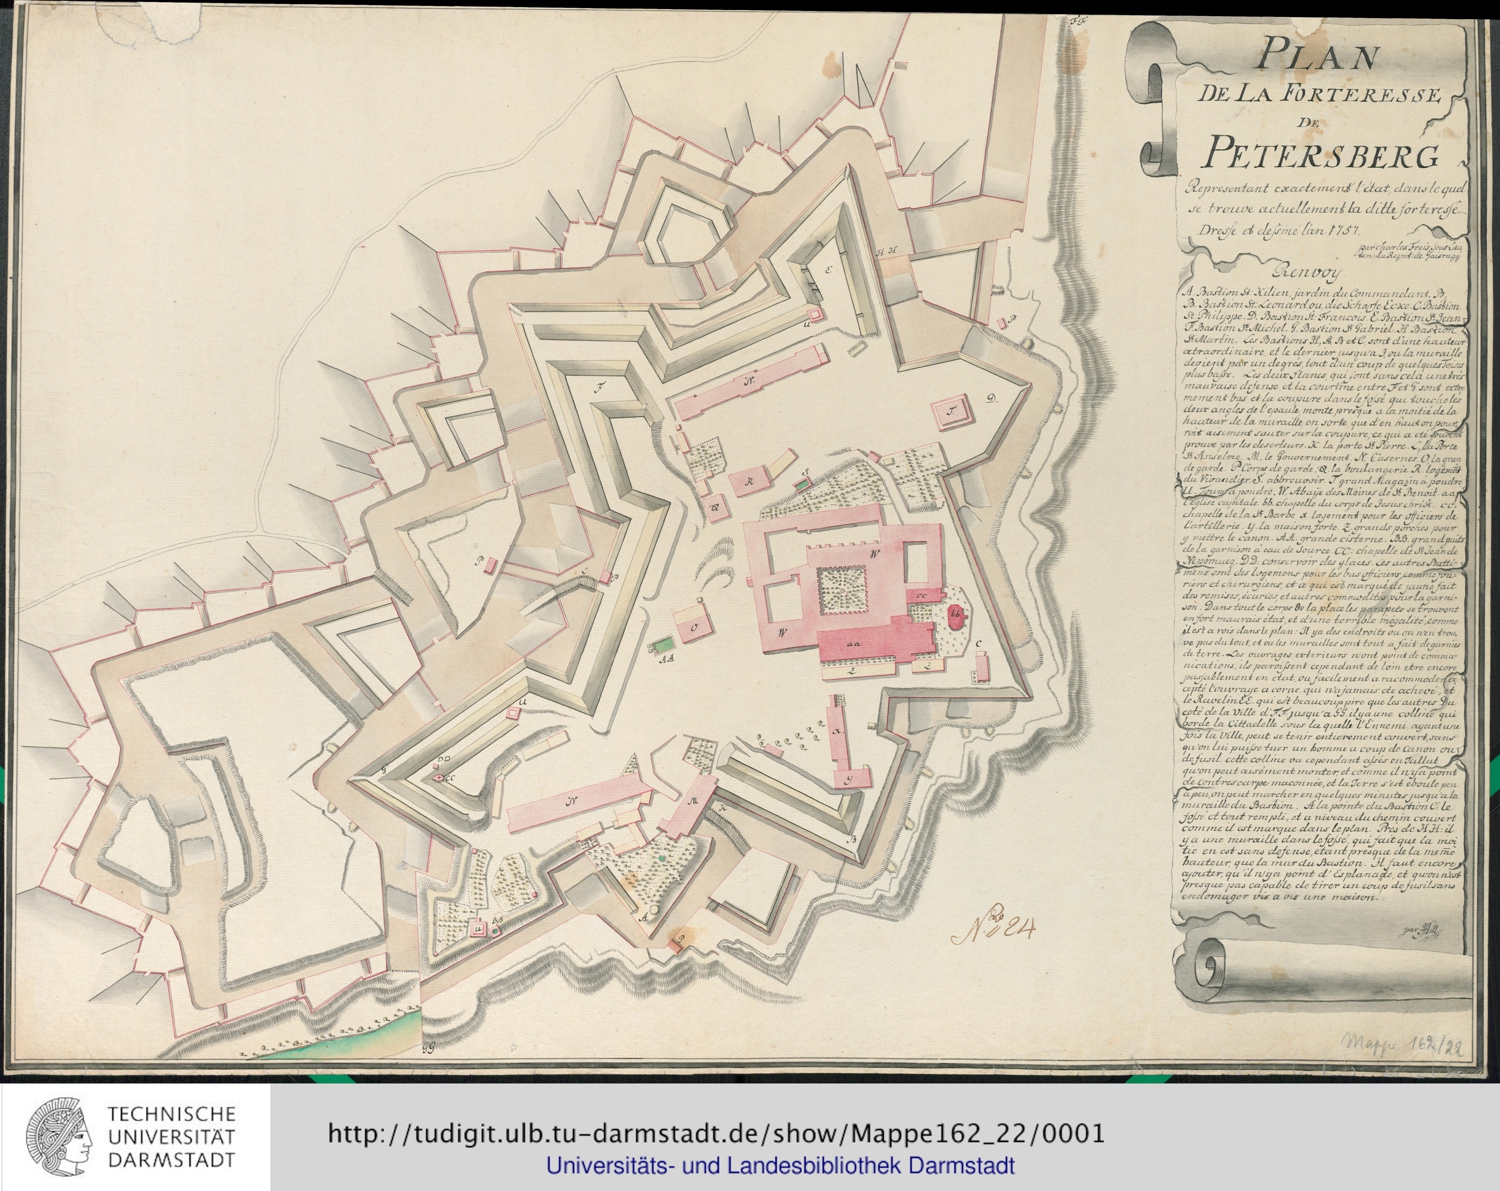 Mappe162_22_0001_stpetersburg_1757.jpg